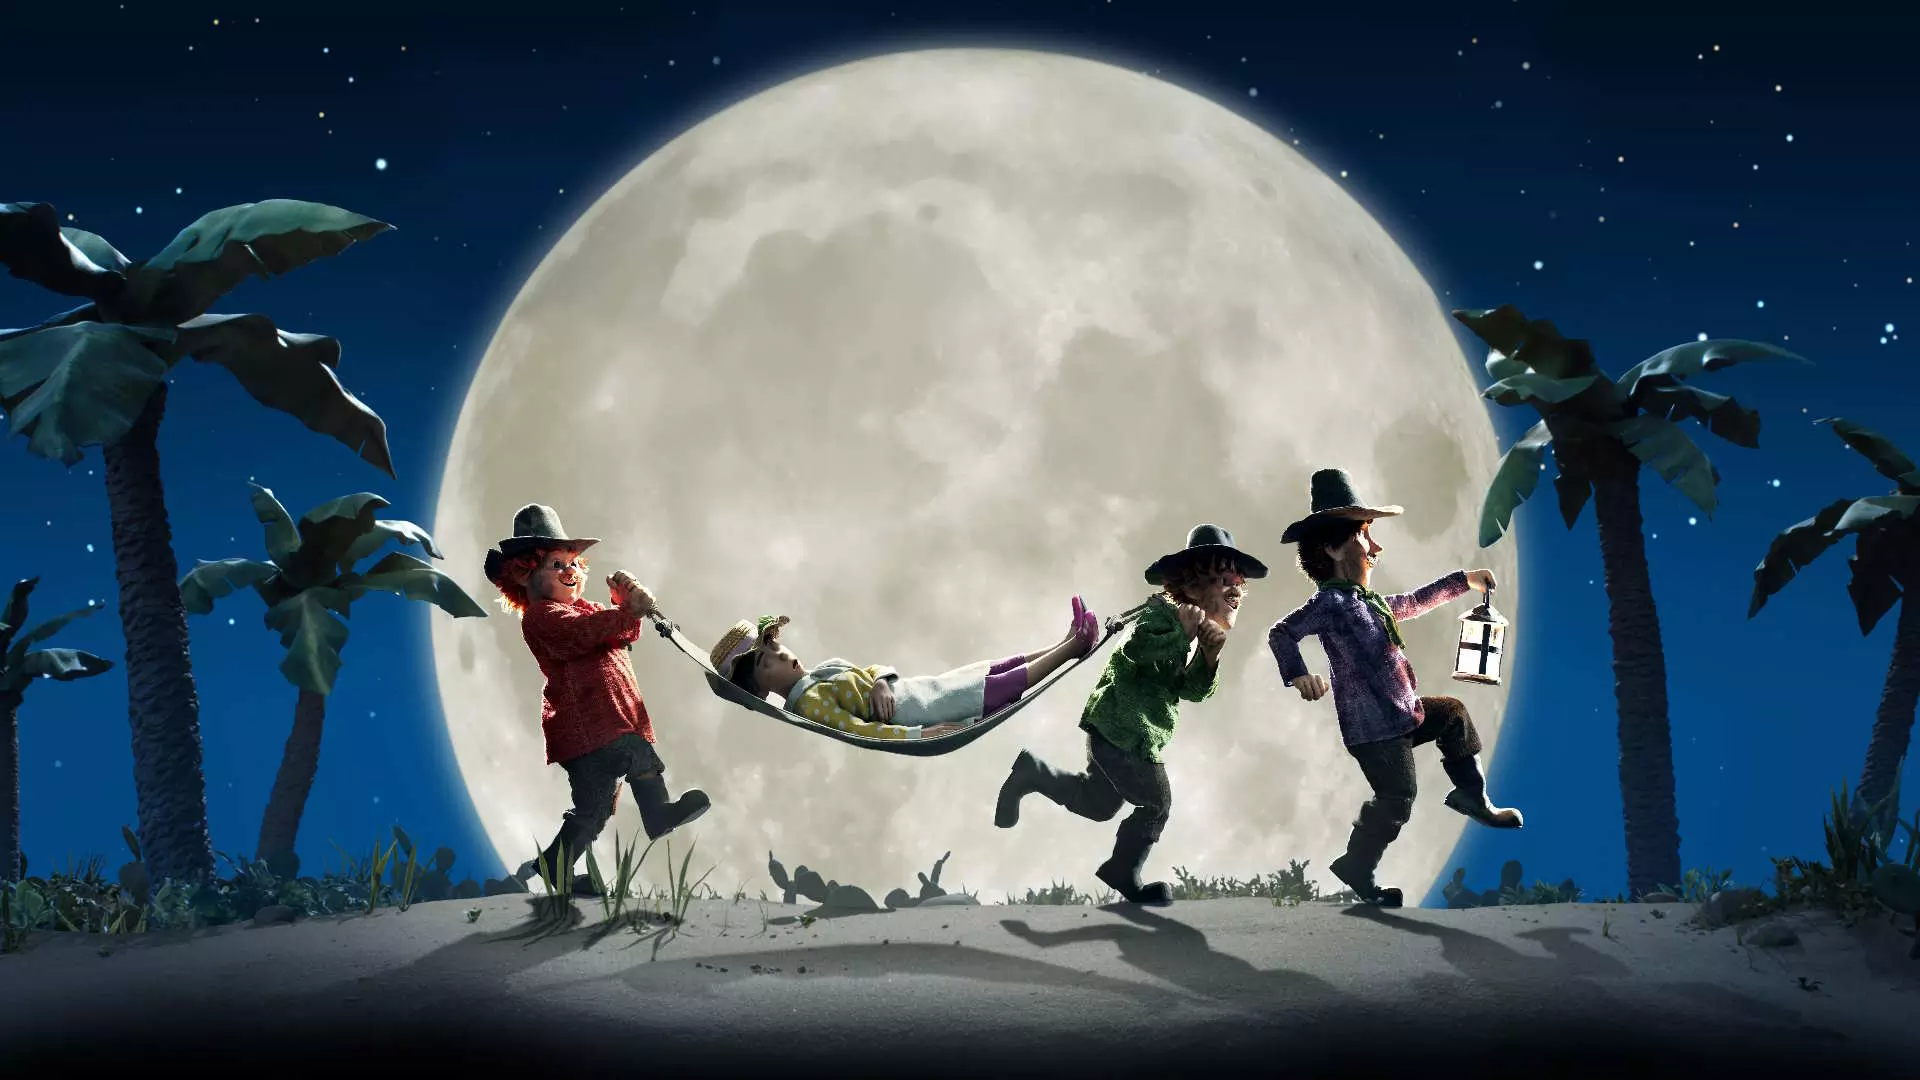 Animasjon. En enorm måne midt på bildet. Det er natt. Forran månen ser vi konturen av de menn med hatt og lykt. De to bakerste bærer en hengekøye med en sovende dame oppi. De lister seg i natten.